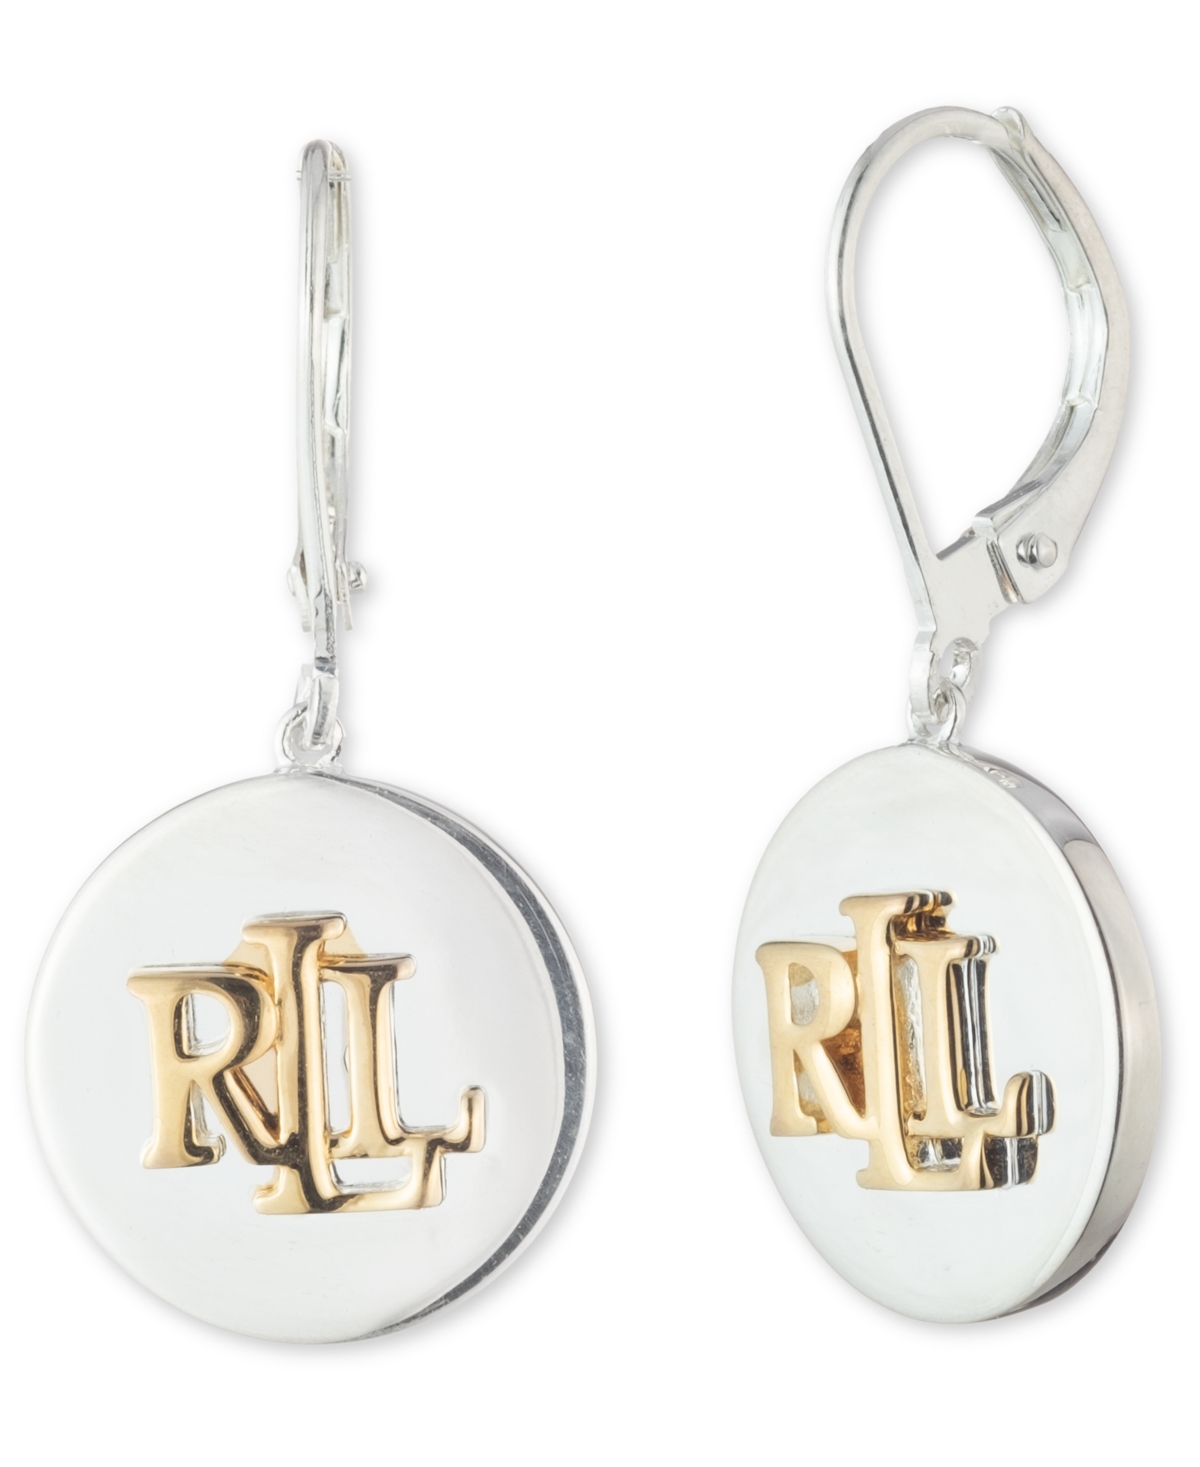 Lauren Ralph Lauren Logo Disc Drop Earrings in Sterling Silver & 18k Gold-Plate - Two-Tone